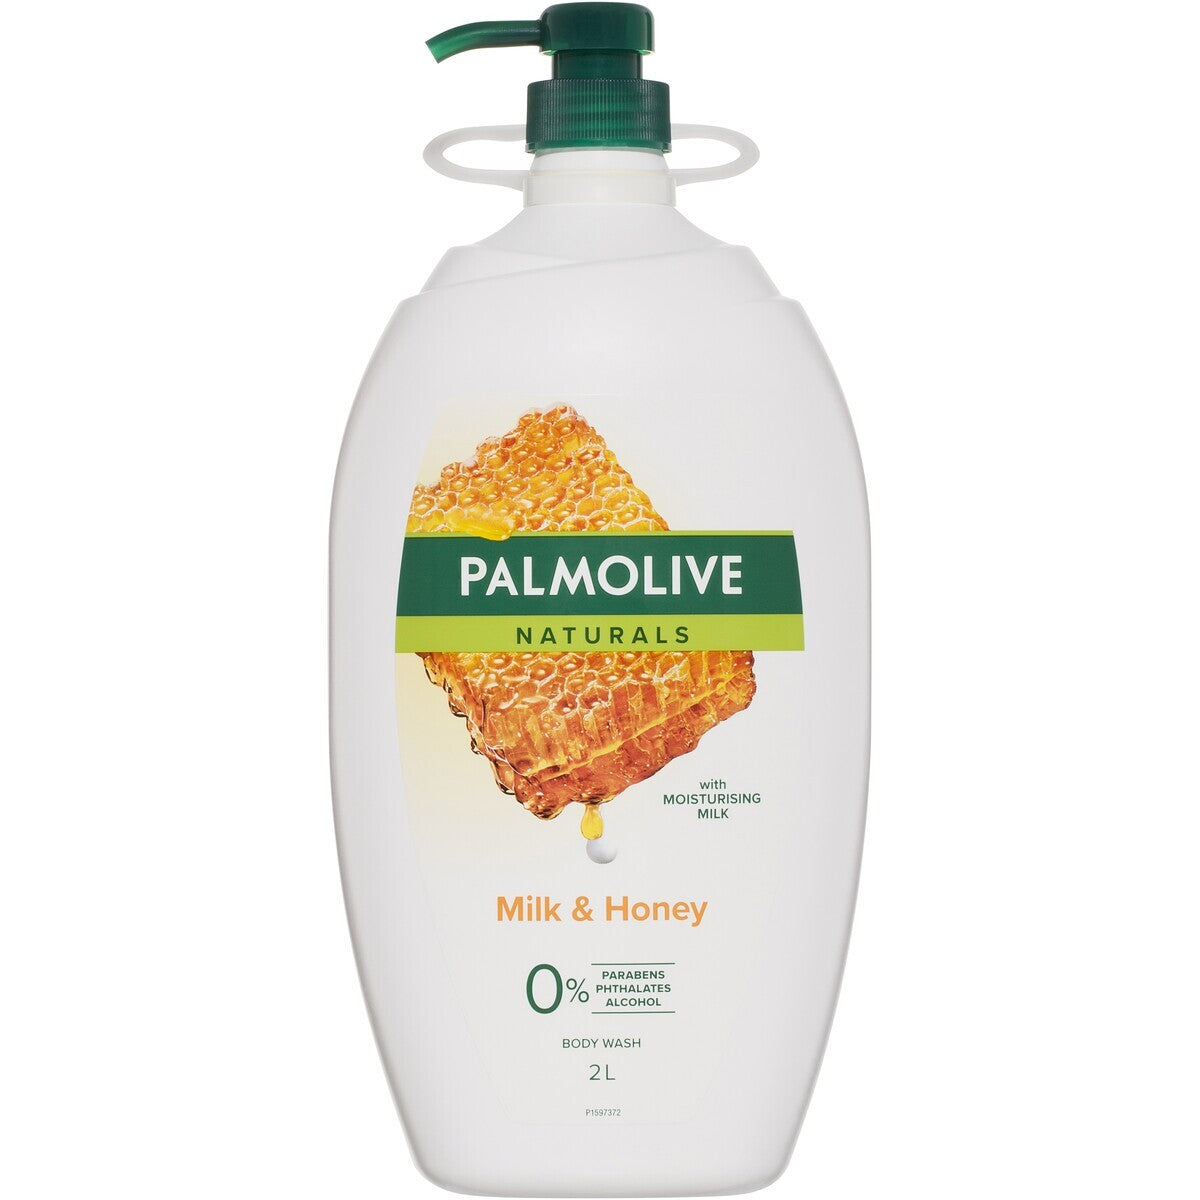 Palmolive Milk & Honey Body Wash 2L